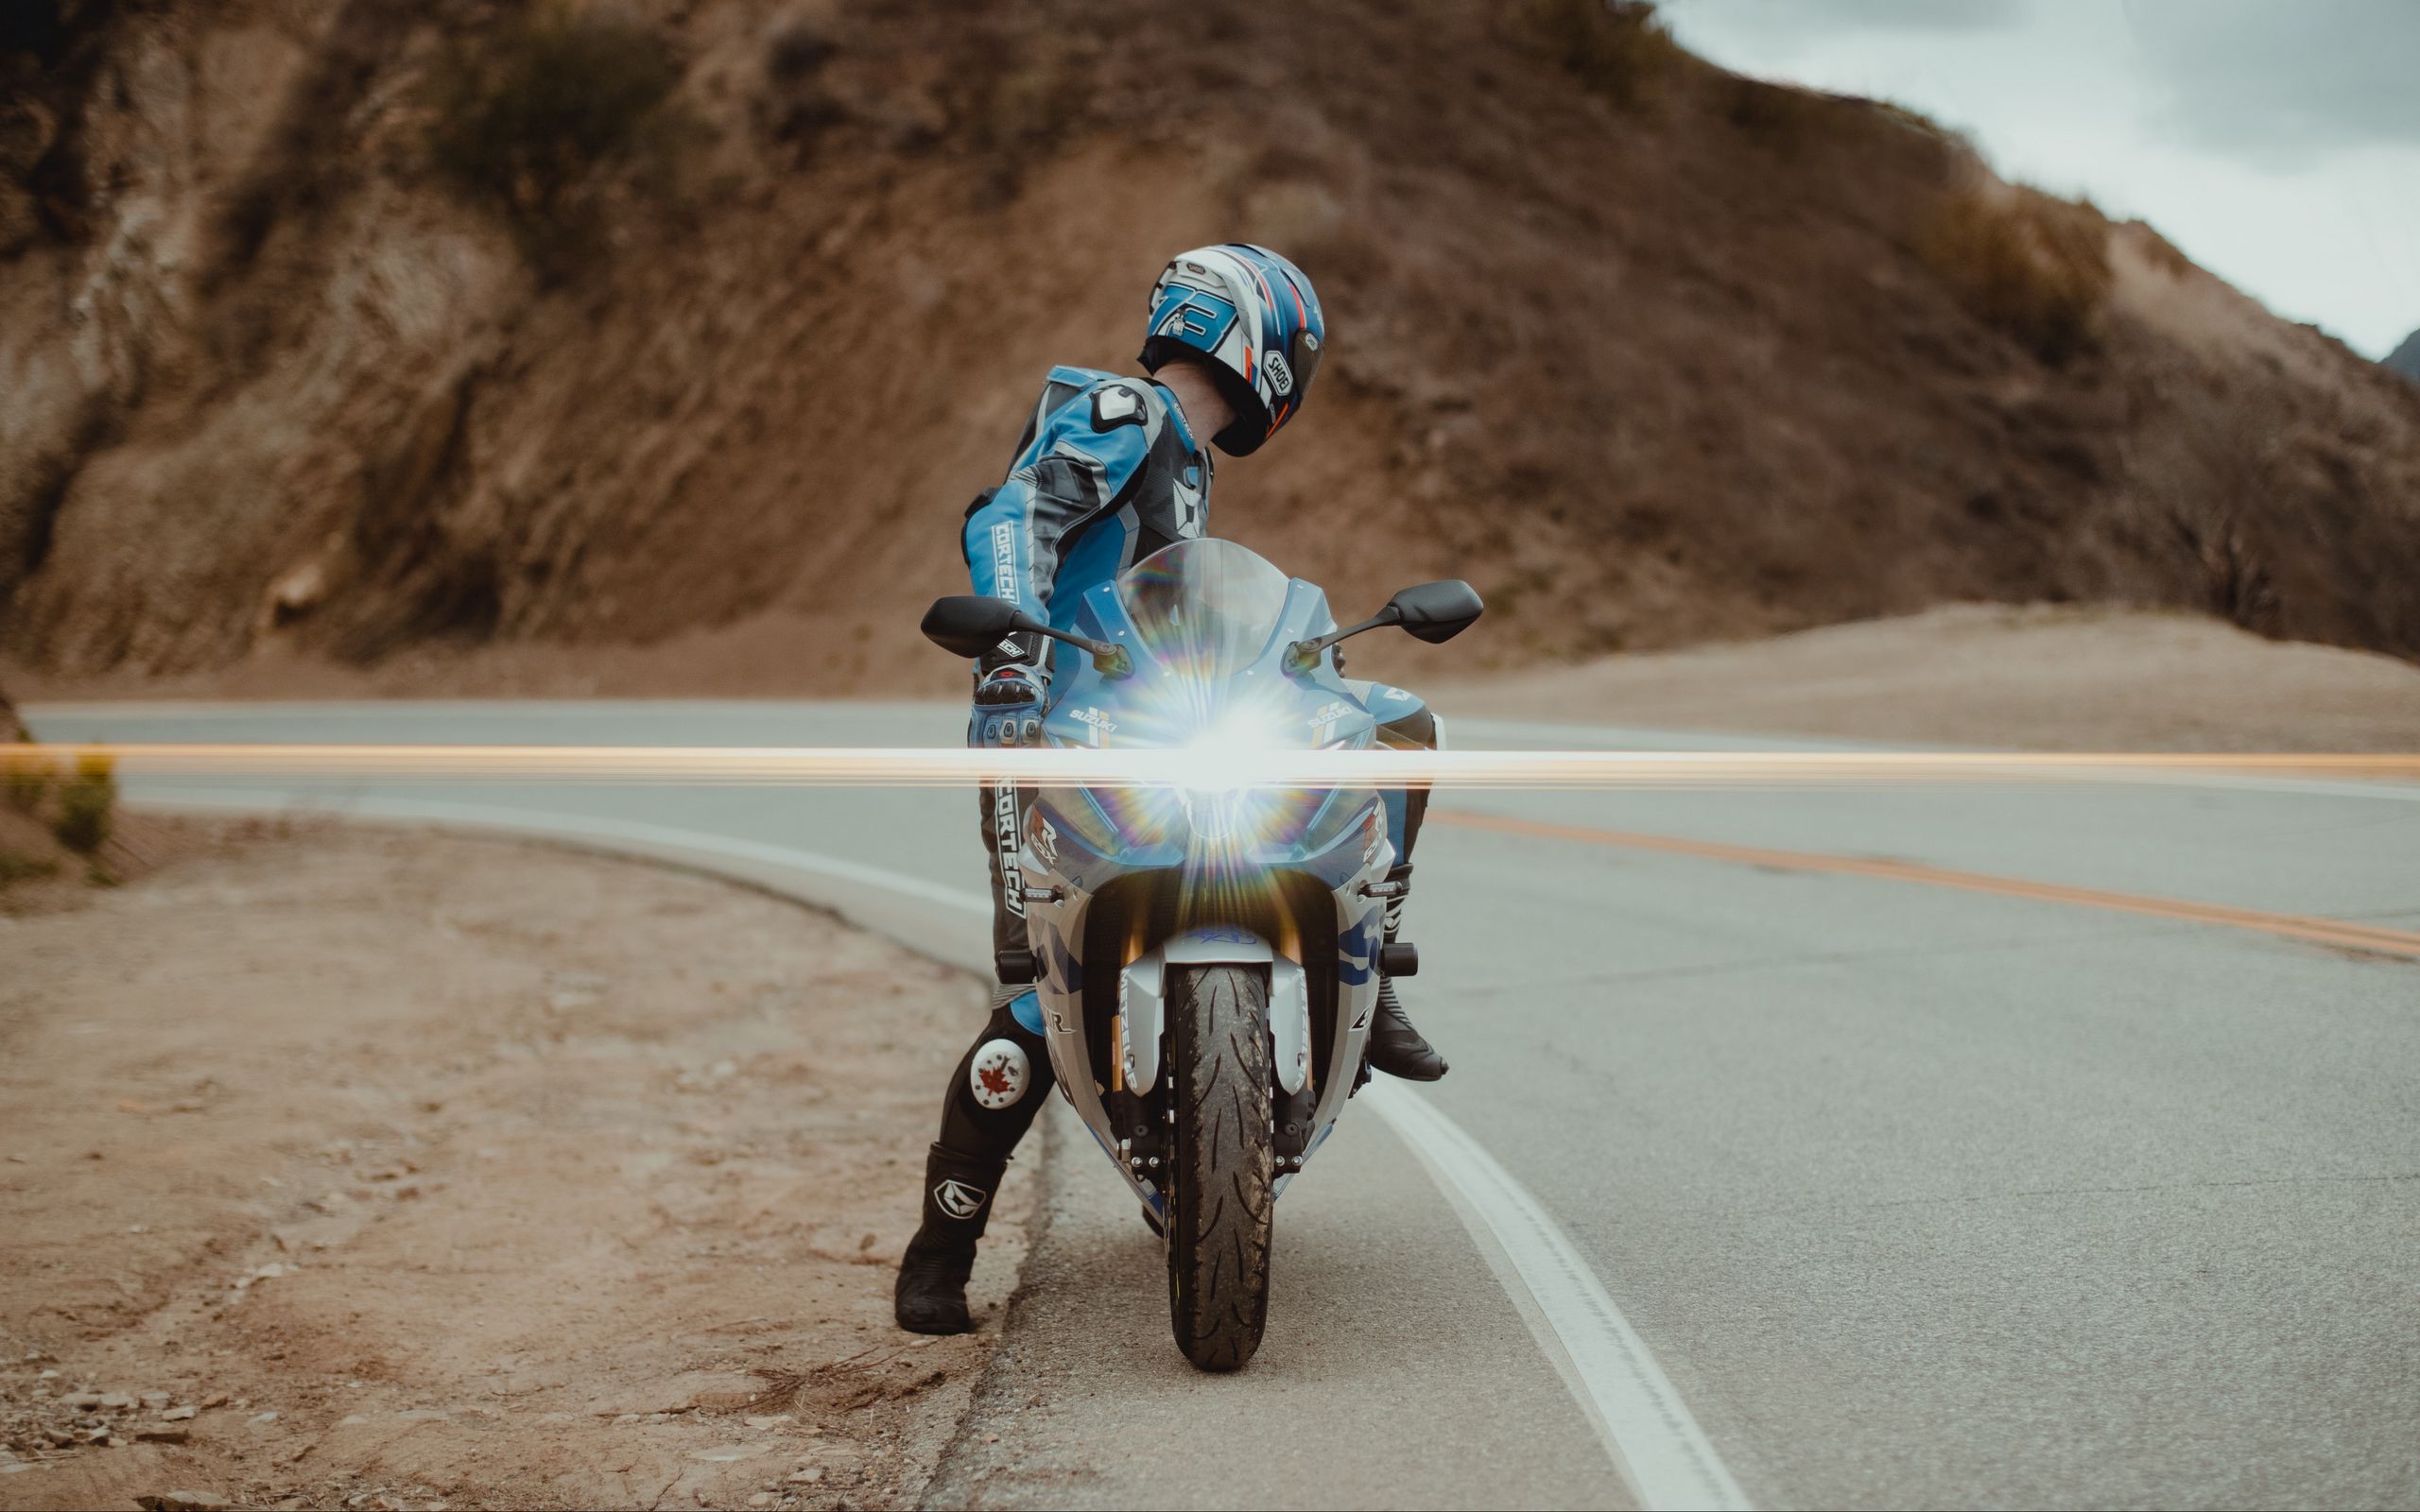 2560x1600 Wallpaper motorcycle, motorcyclist, bike, sport bike, light